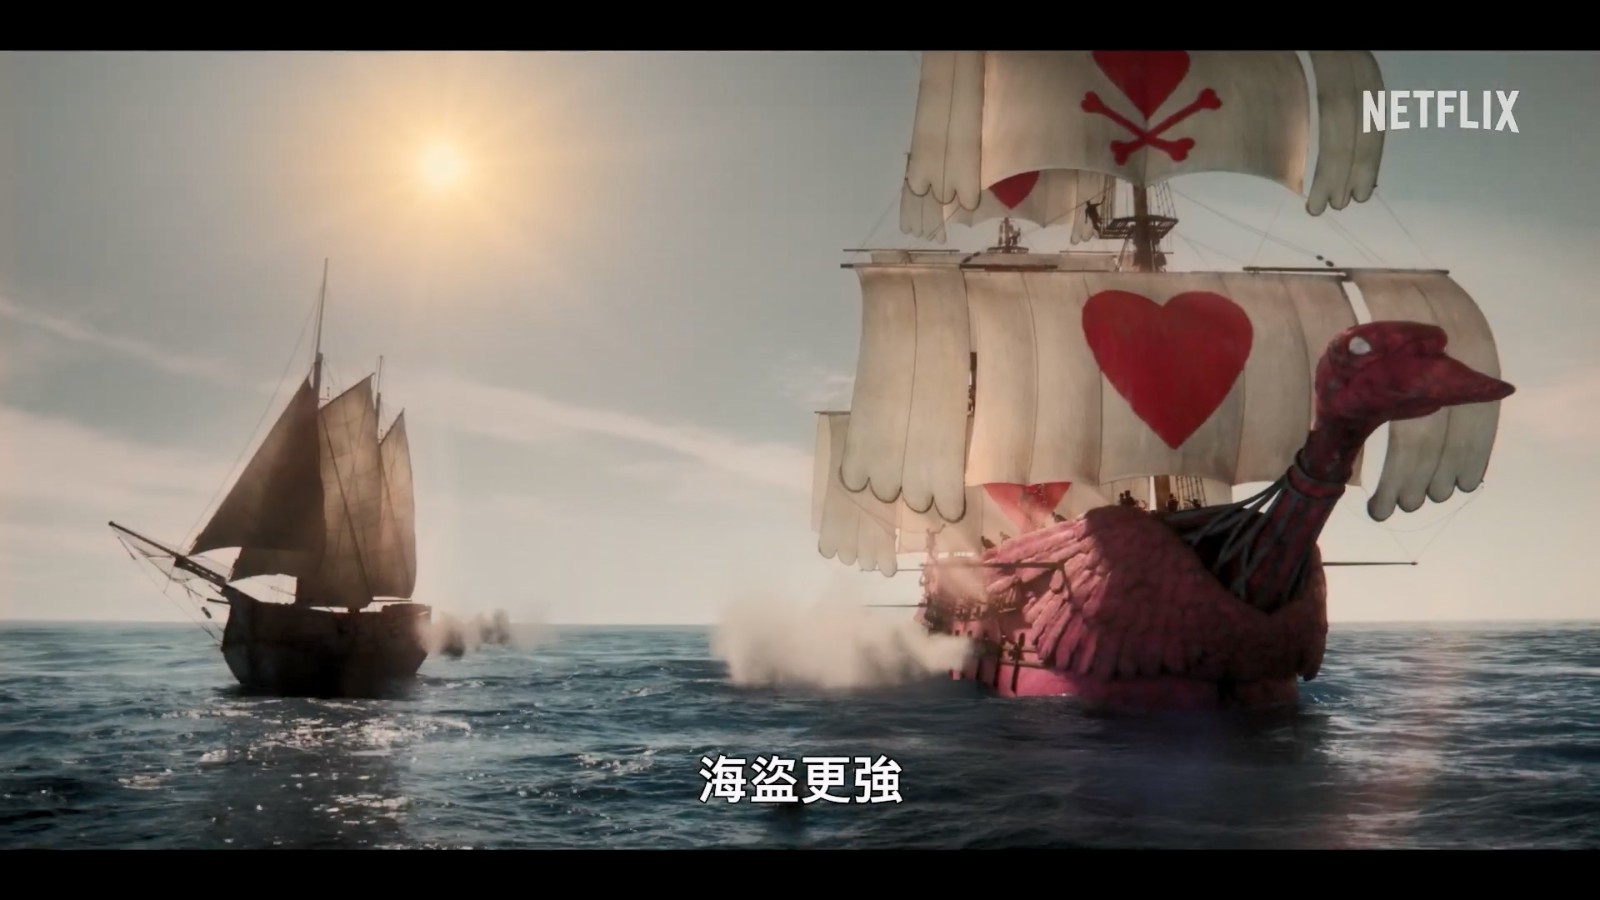 Netflix《海贼王》剧集曝前导预告 8月31日播出